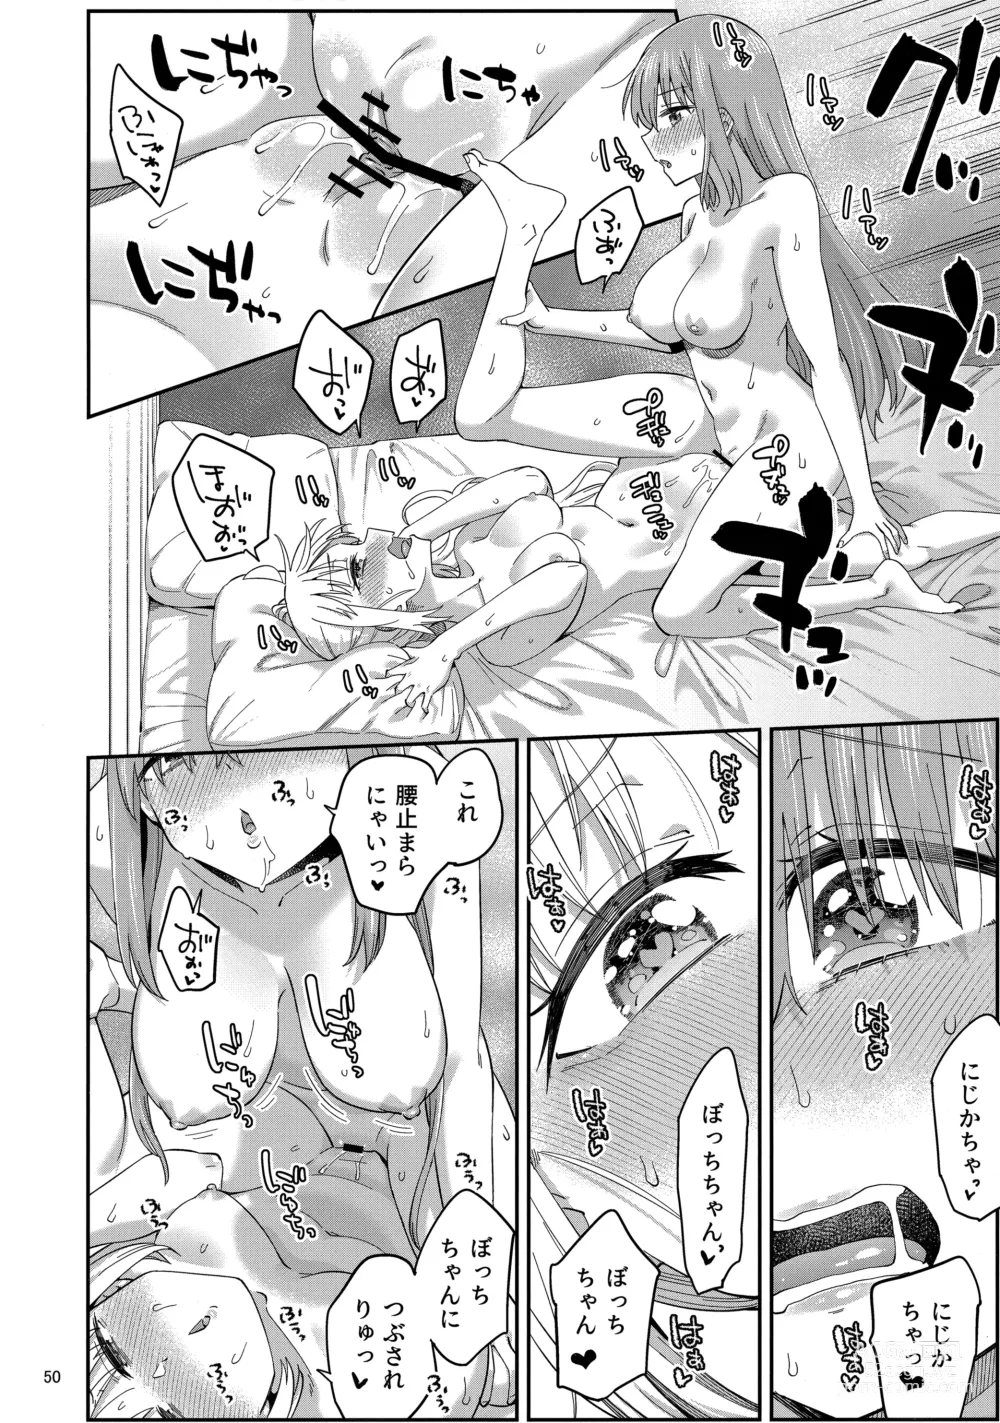 Page 49 of doujinshi Netsu o Mazete Shin o Tokashite